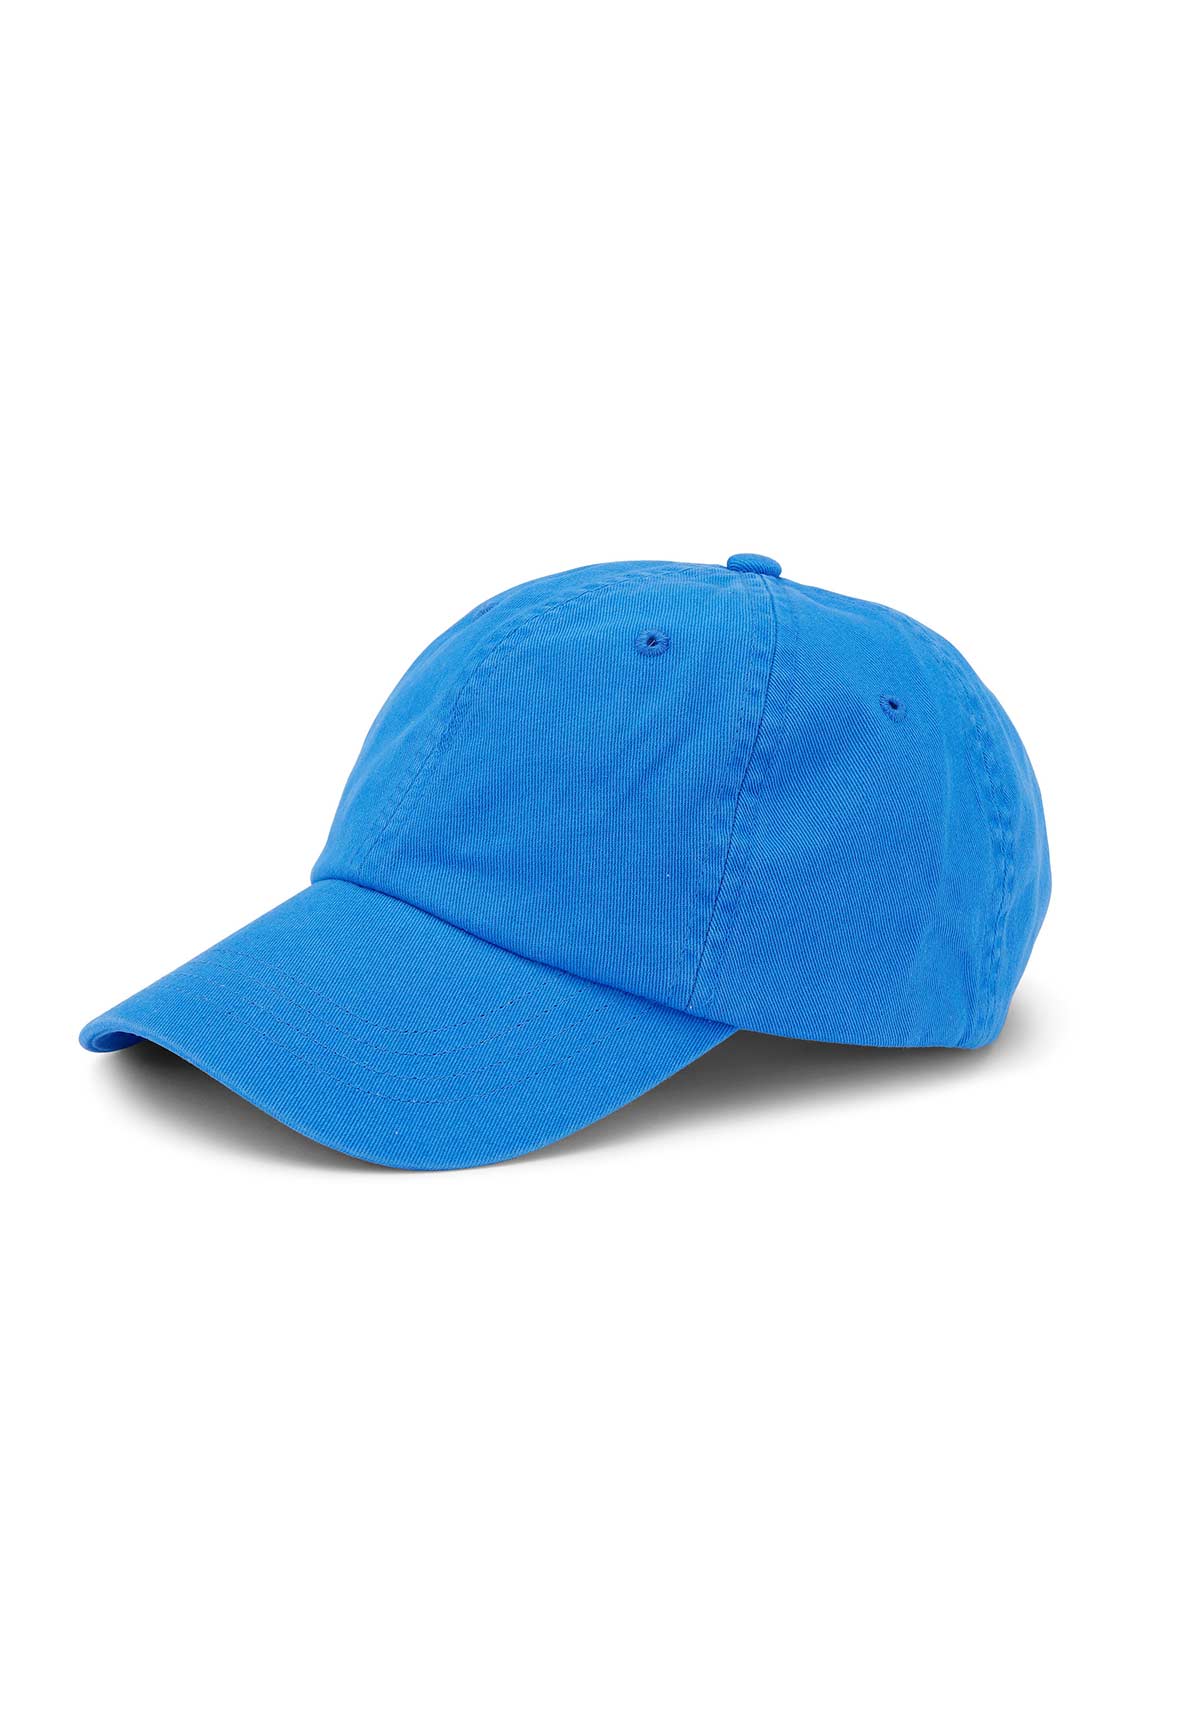 COTTON CAP PACIFIC BLUE